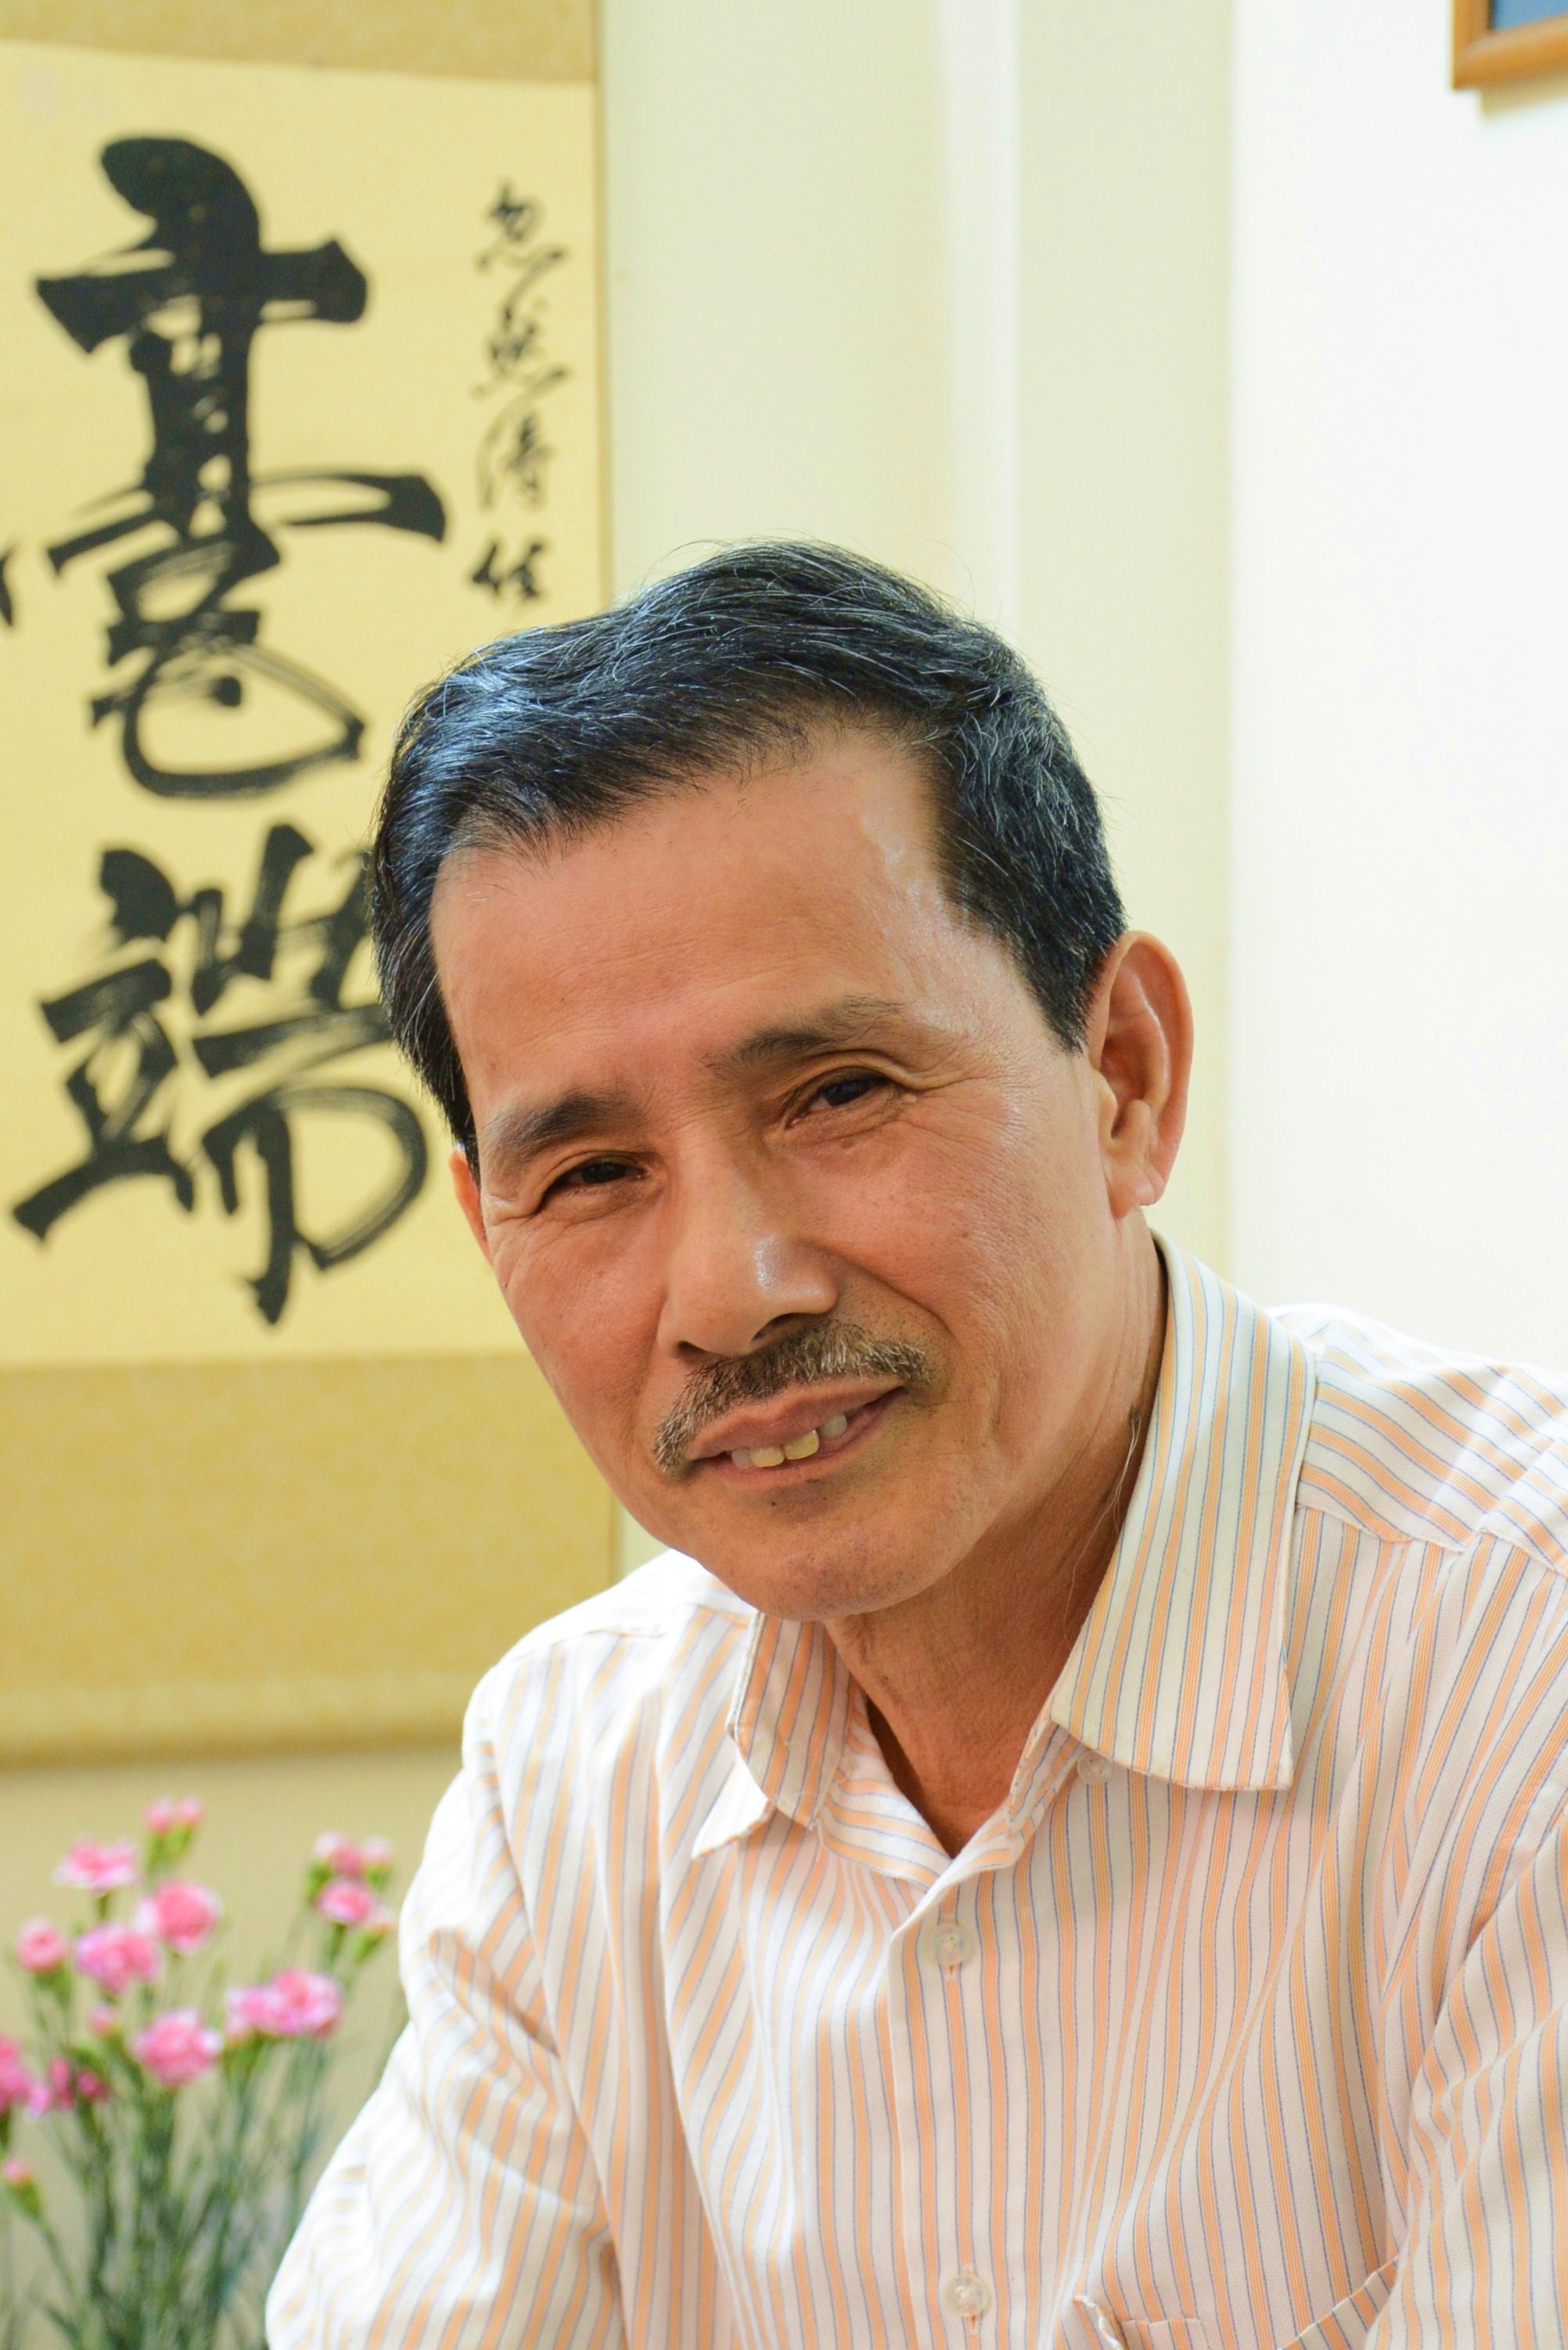 Nhà giáo – nhà văn Bùi Việt Thắng: “Nghề dạy học tạo điều kiện cho tôi sống tử tế” - 1